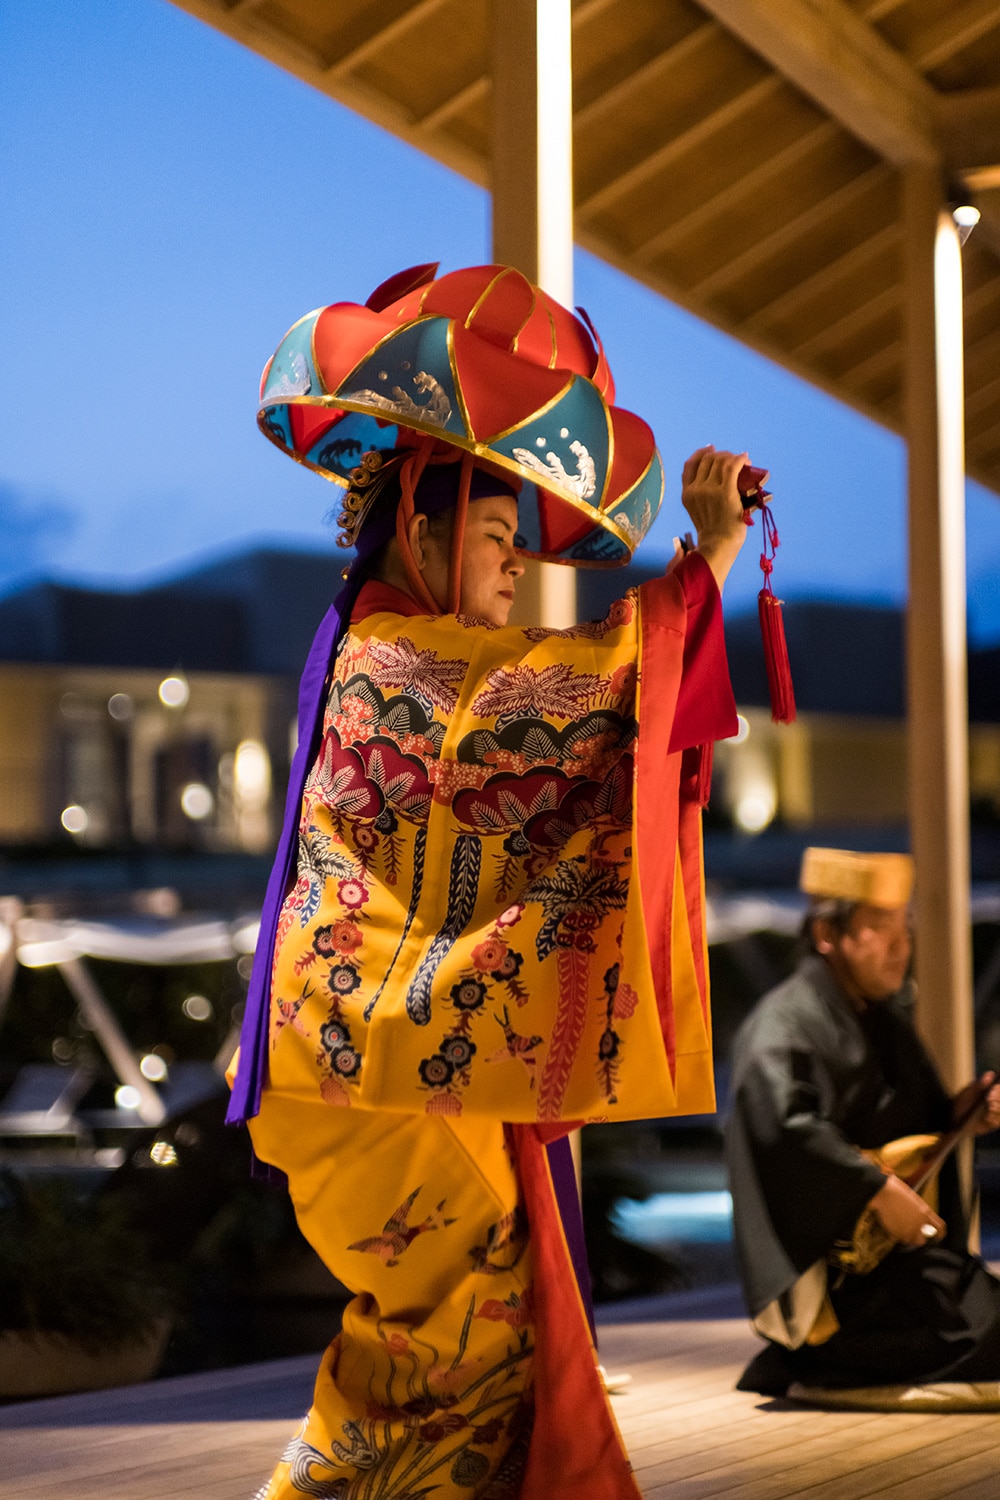 集いの館で毎夕開催されるアクティビティ「宵の座」。琉球舞踊のほか、沖縄空手の演武なども(演目は日により異なります)。